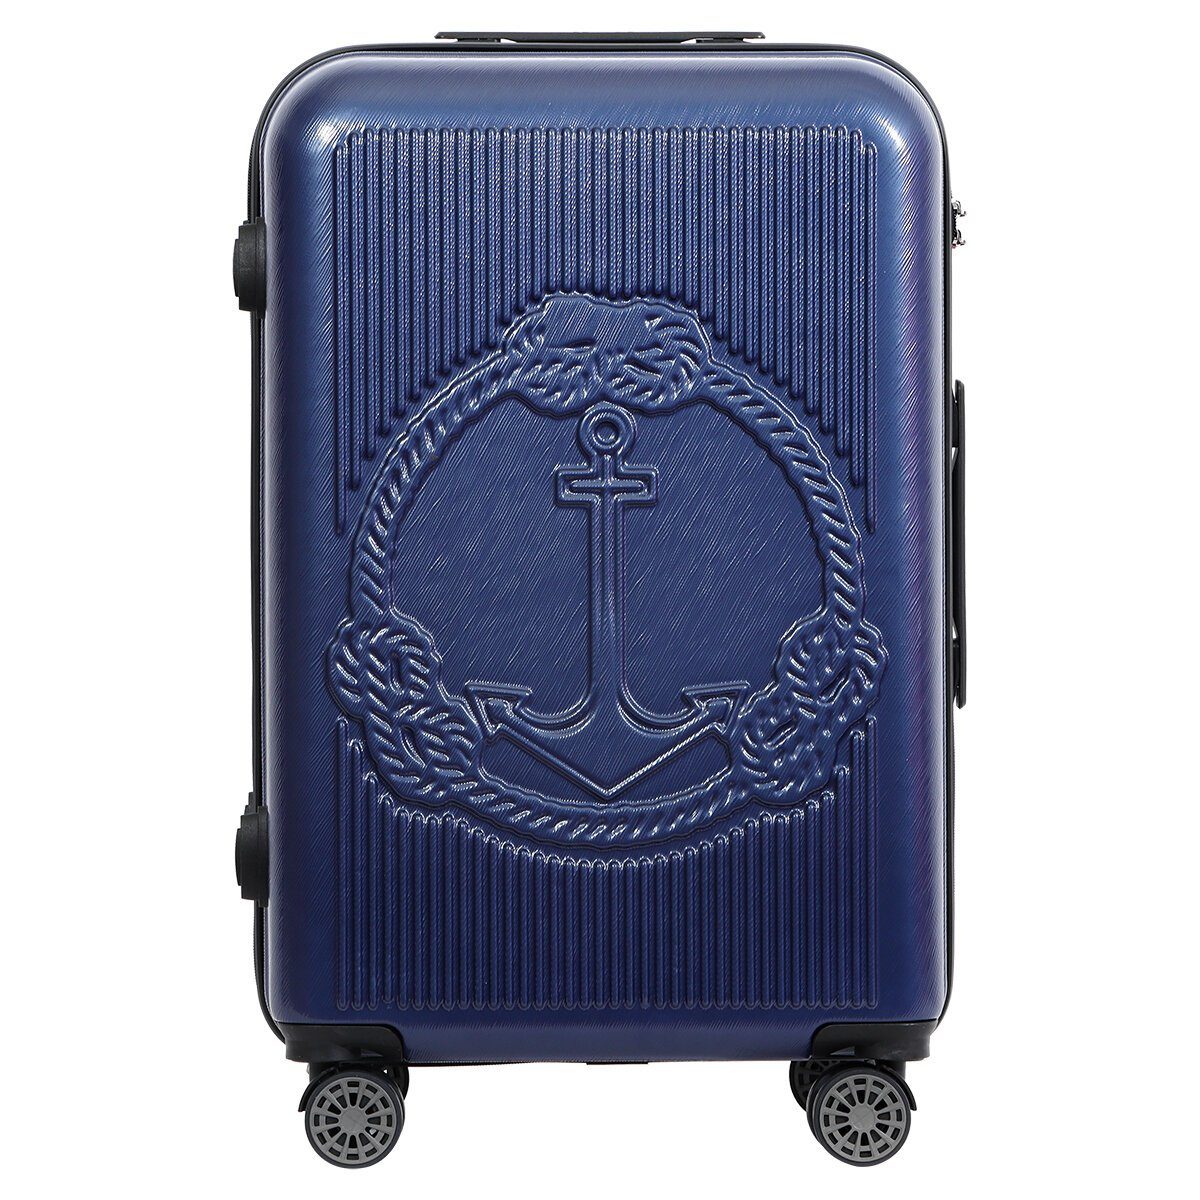 Mittelgroß Biggdesign Hartschale Koffer Koffer Blau Ocean BIGGDESIGN